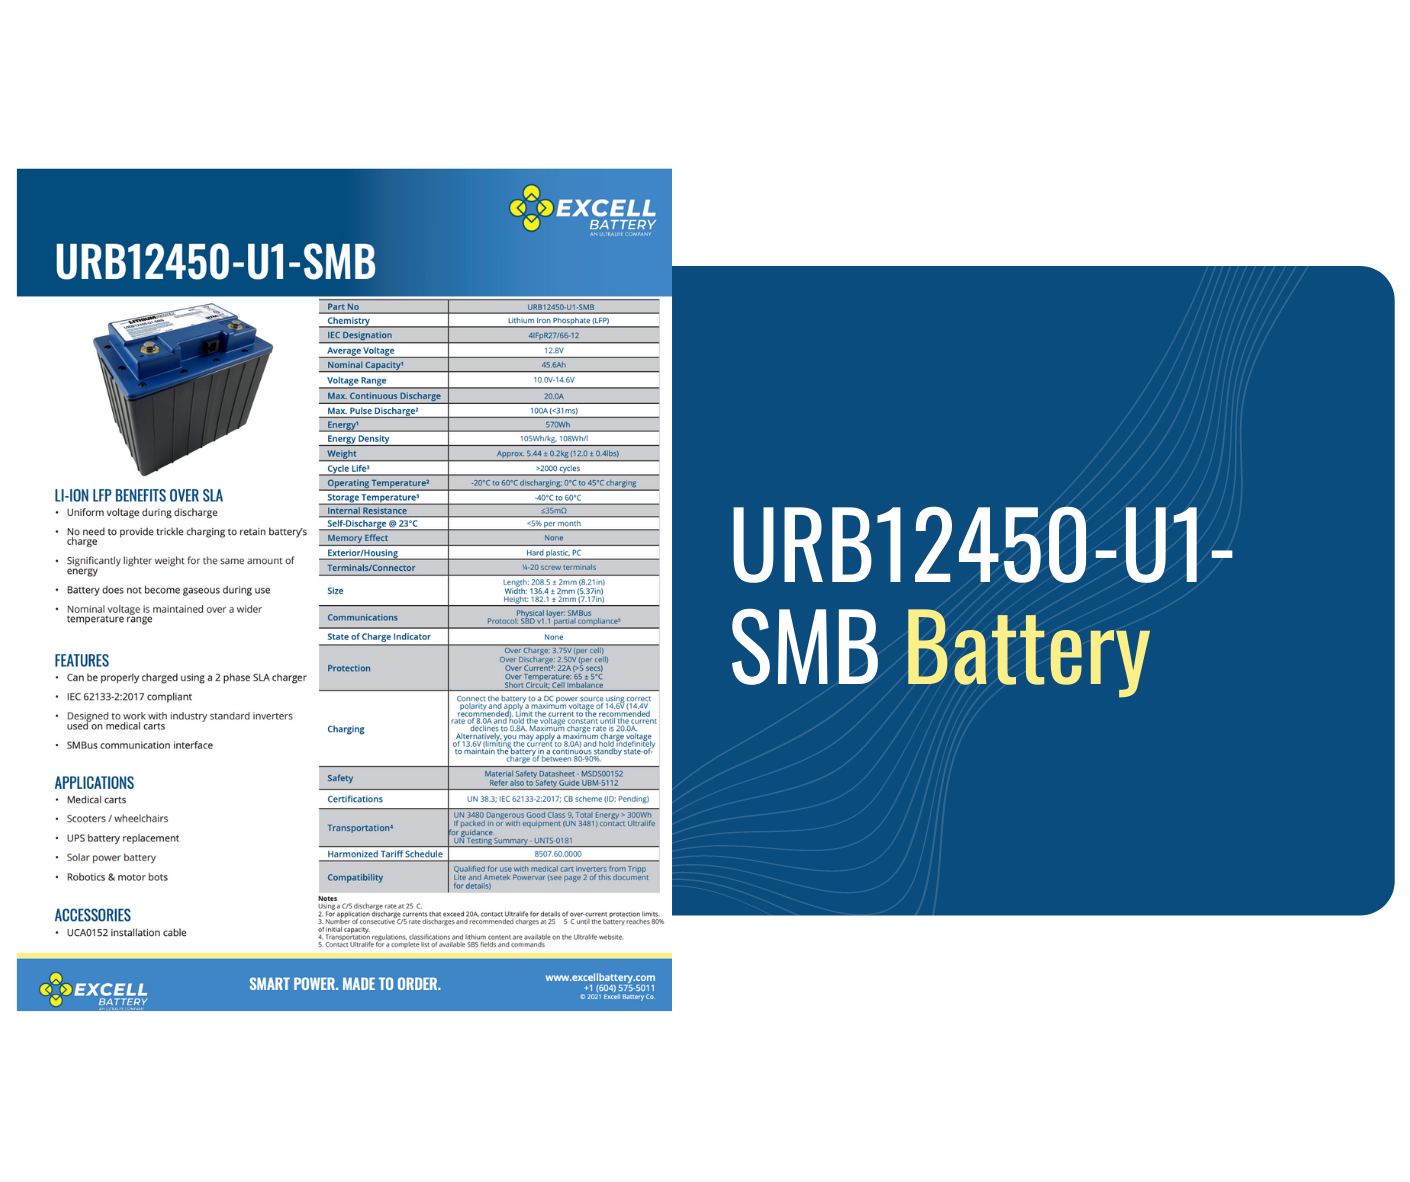 URB12450-U1-SMB Battery